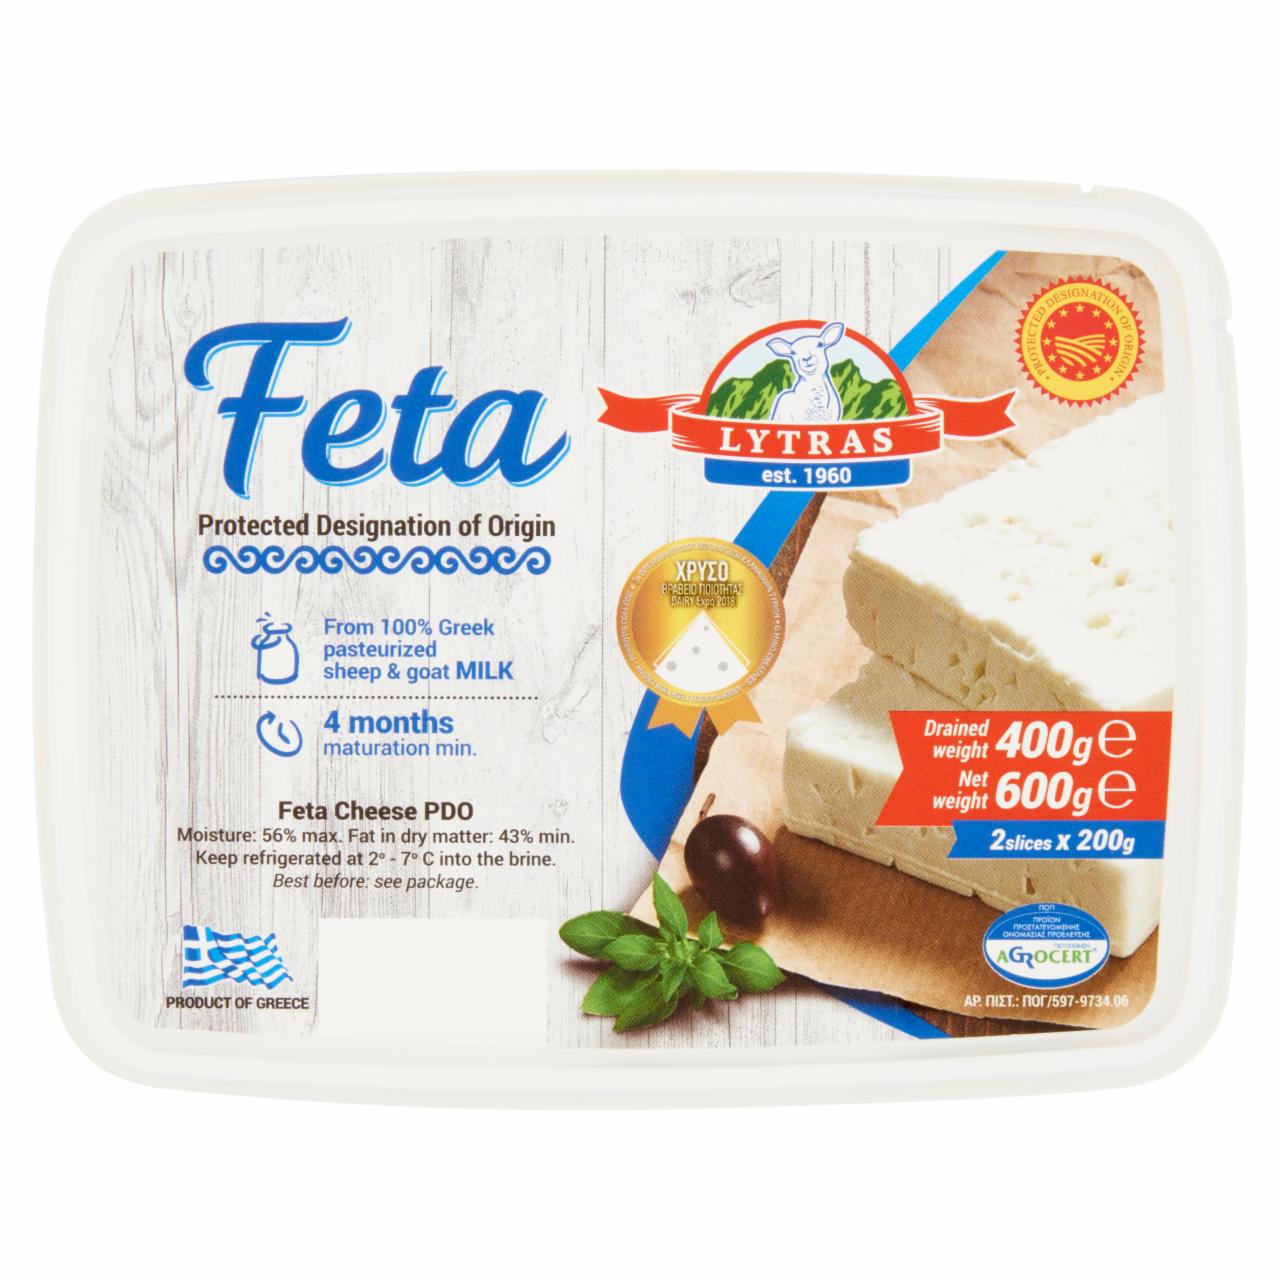 Képek - Lytras zsíros lágy feta sajt sós lében 400 g